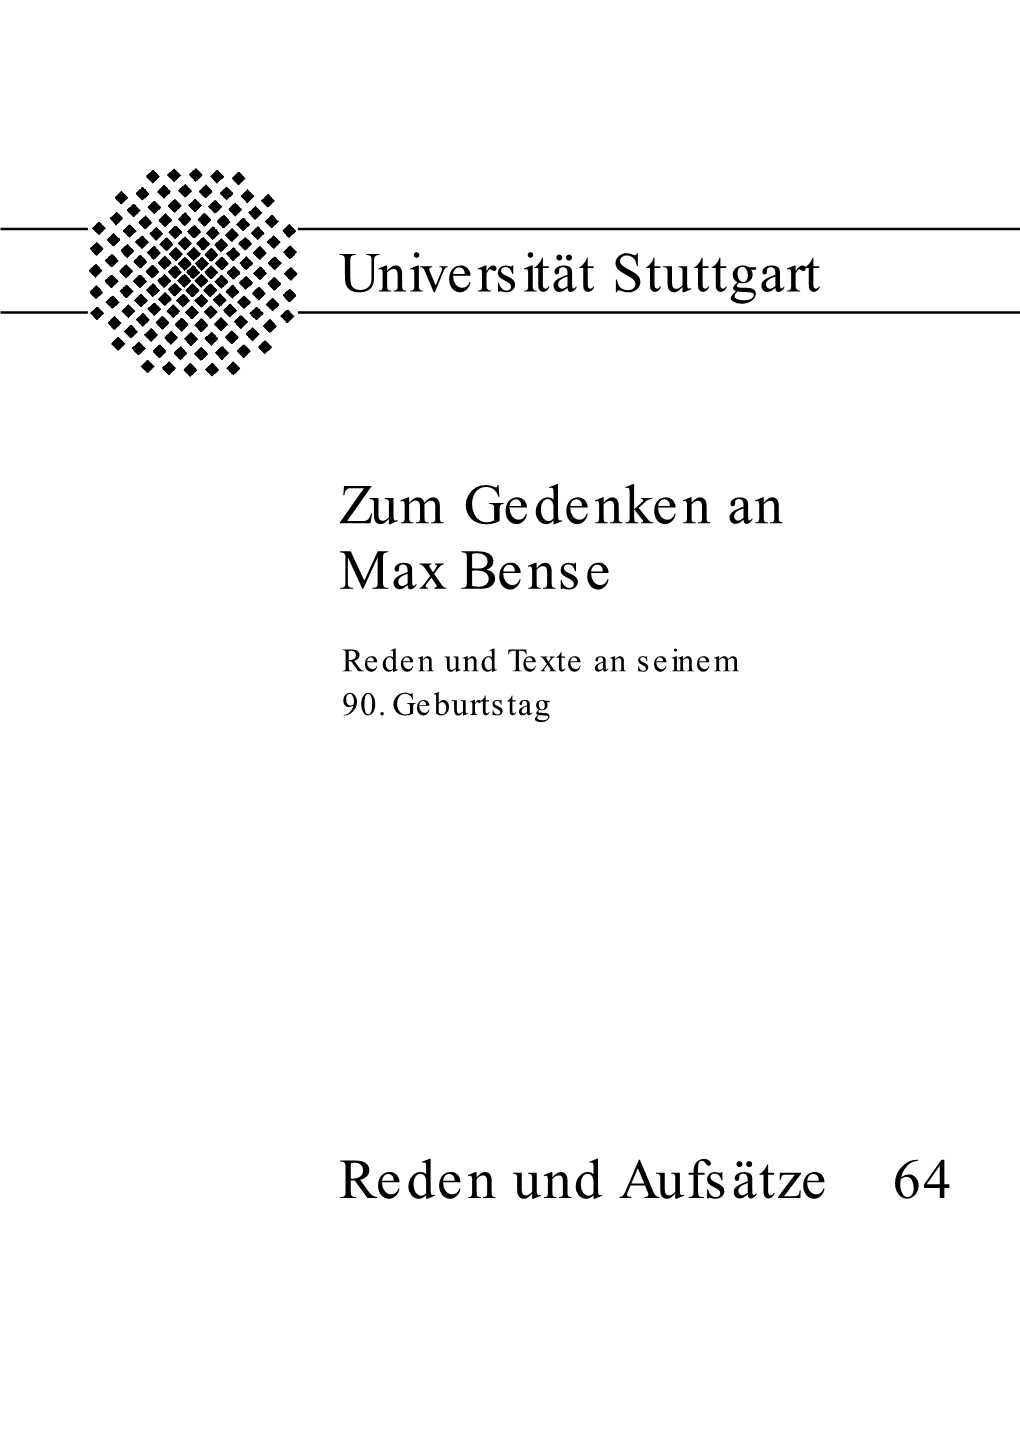 Zum Gedenken an Max Bense Reden Und Aufsätze 64 Universität Stuttgart